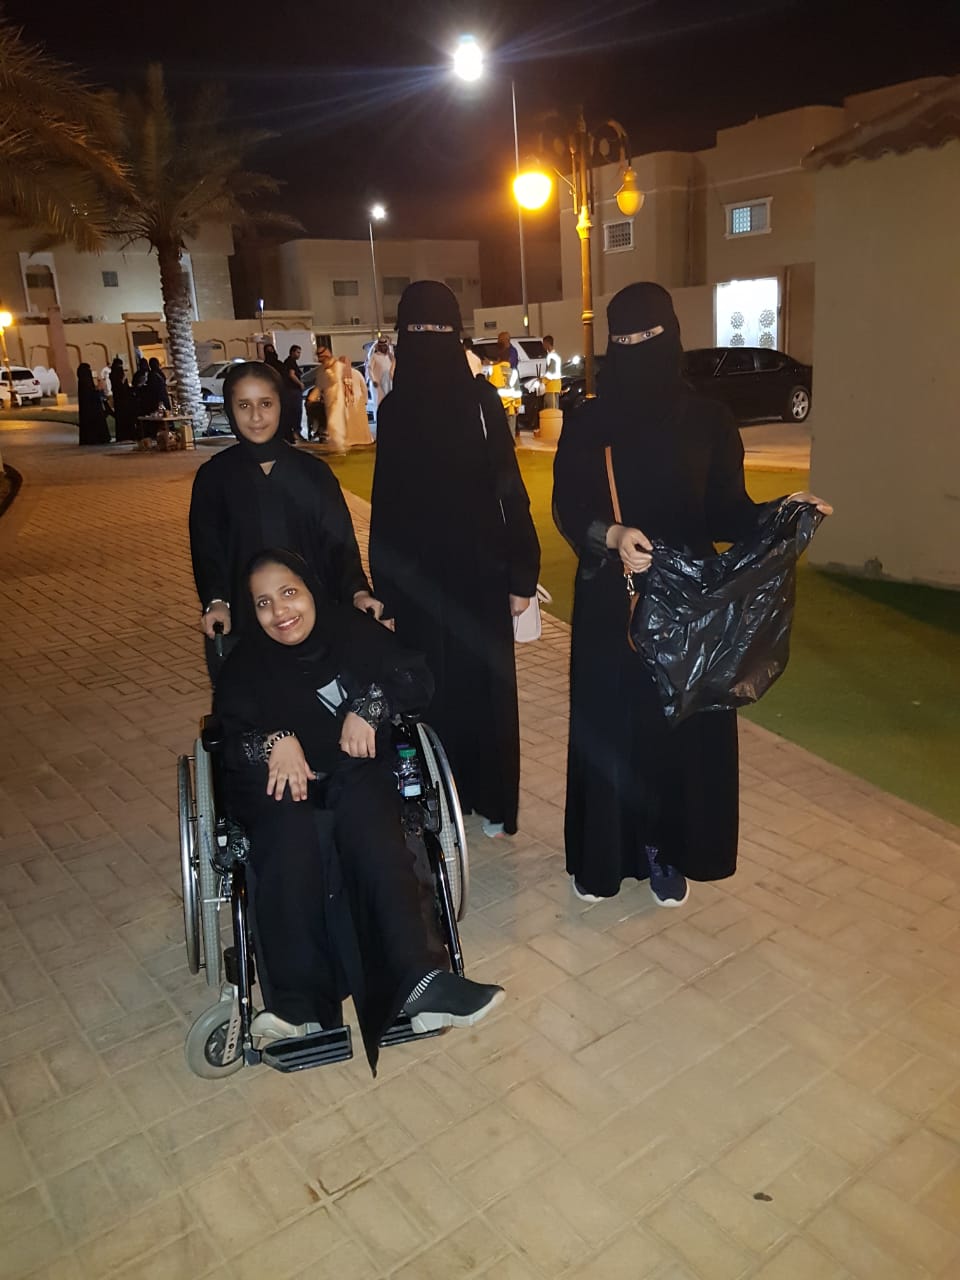 لقطات توثق جهود جسر التطوعي في حملة إماطة الأذى في الرياض